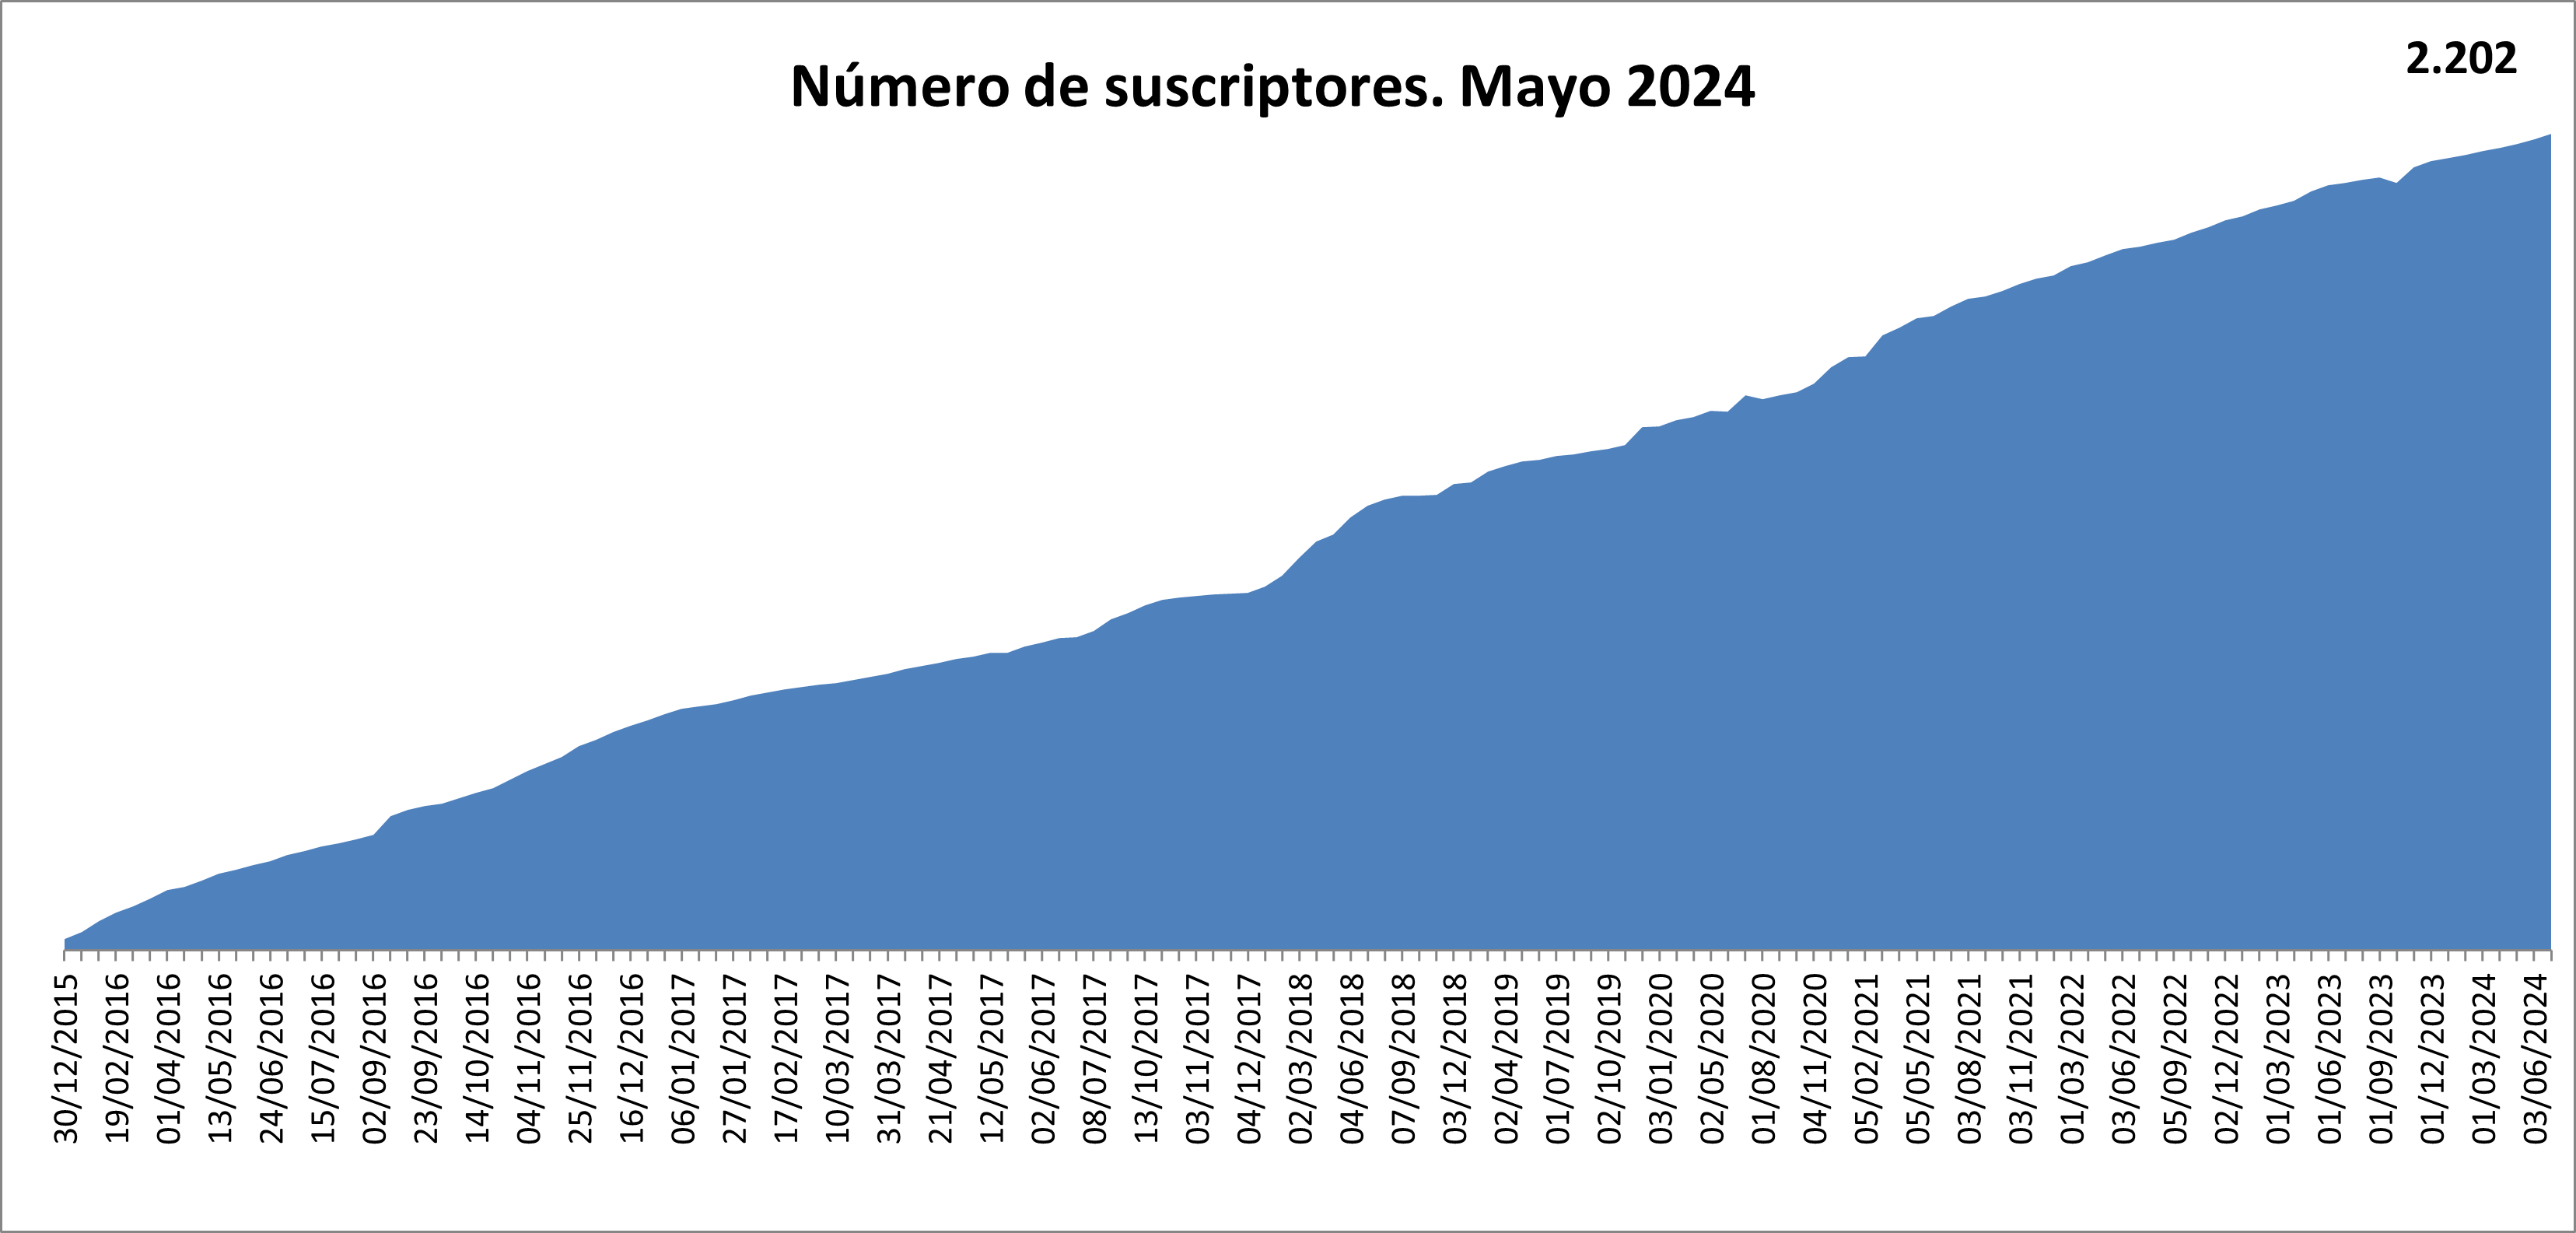 Gráfico del número de suscriptores a los informes de interés